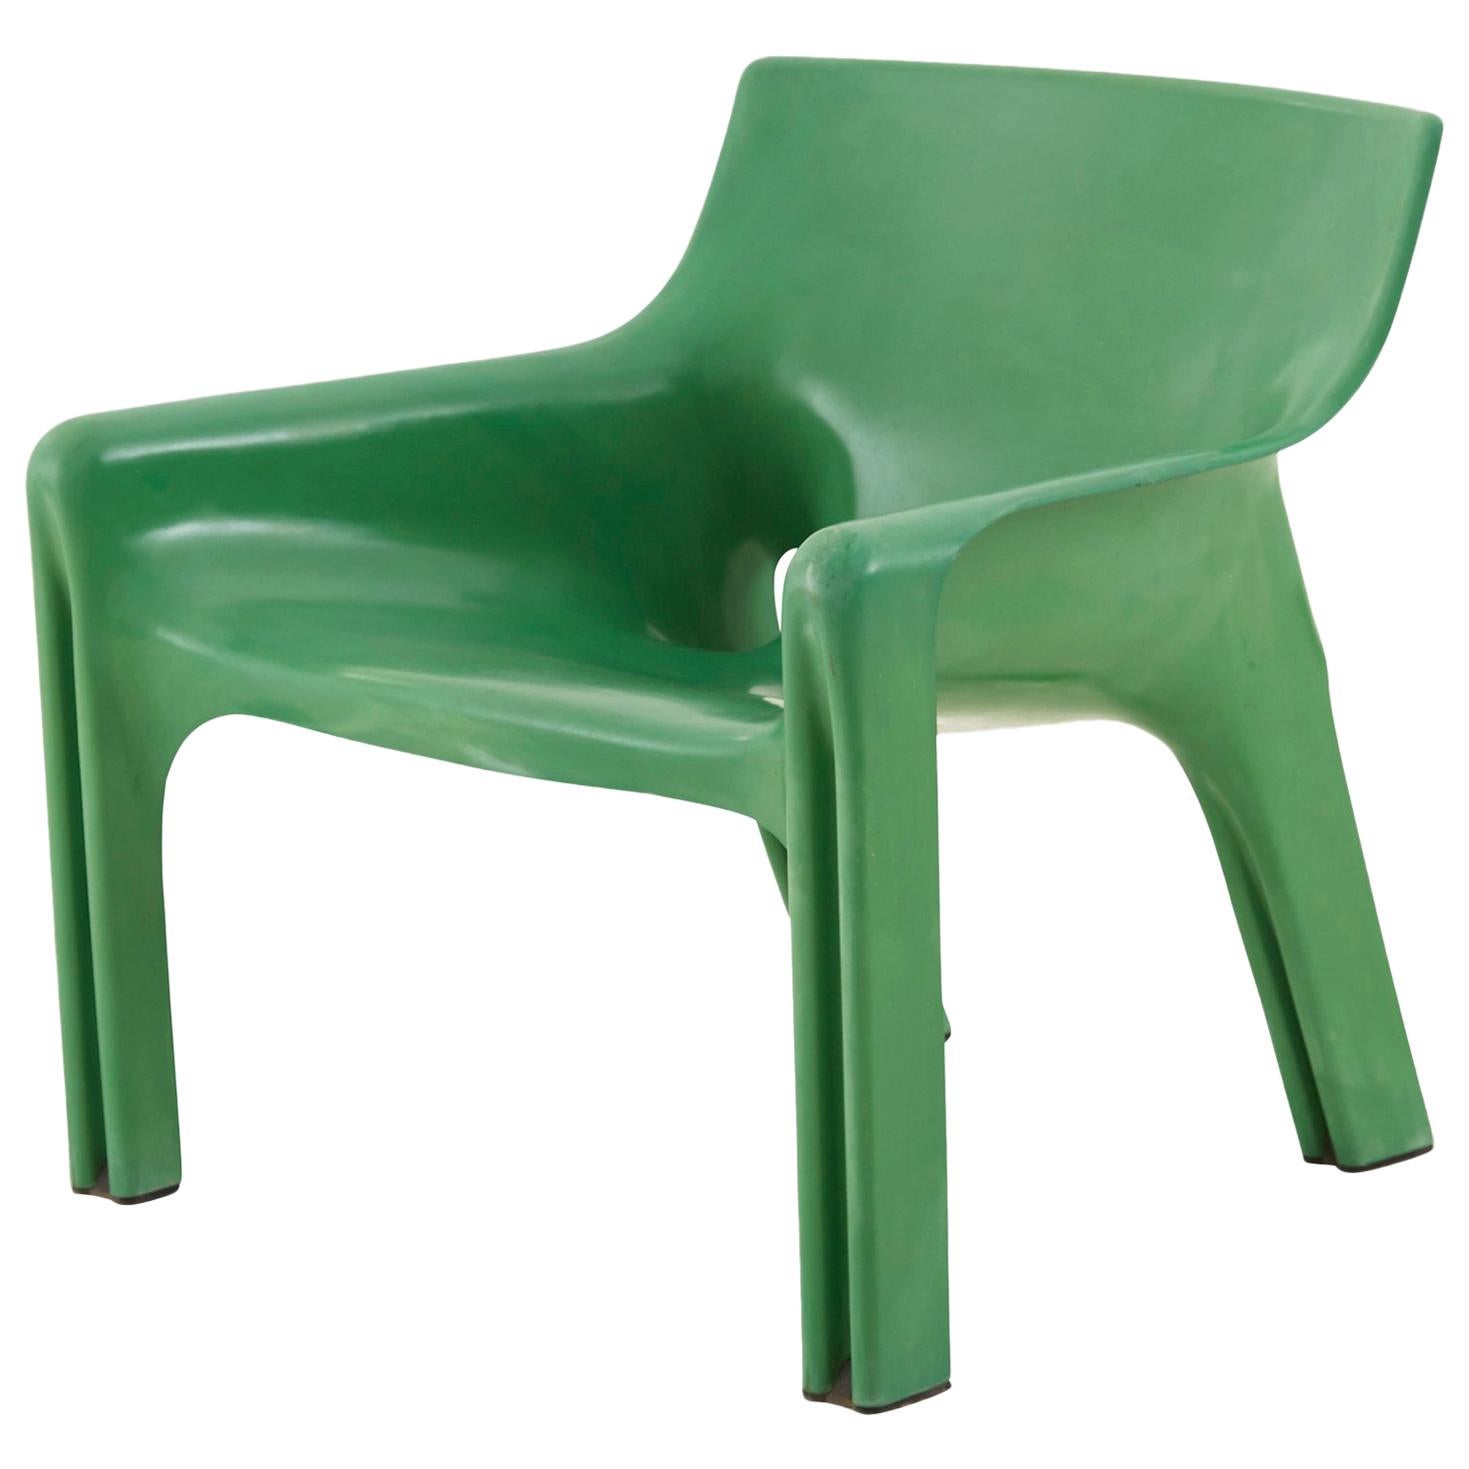 Vico Magistretti Green Molded Plastic Vicario Chair